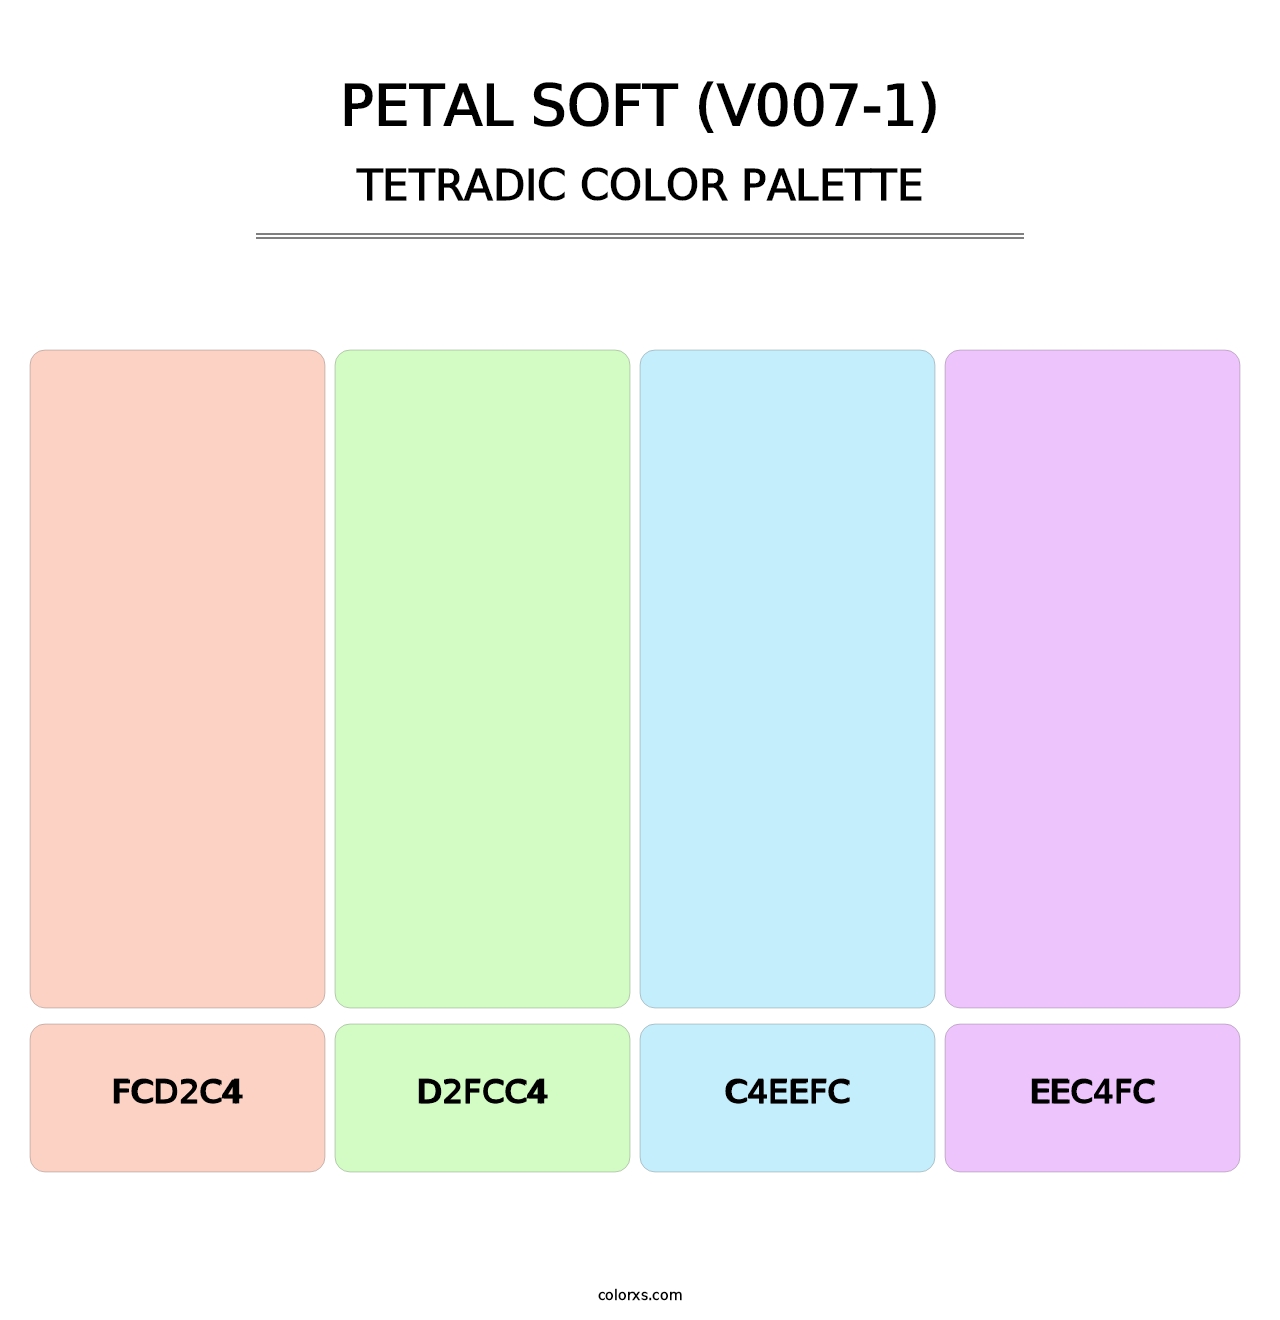 Petal Soft (V007-1) - Tetradic Color Palette